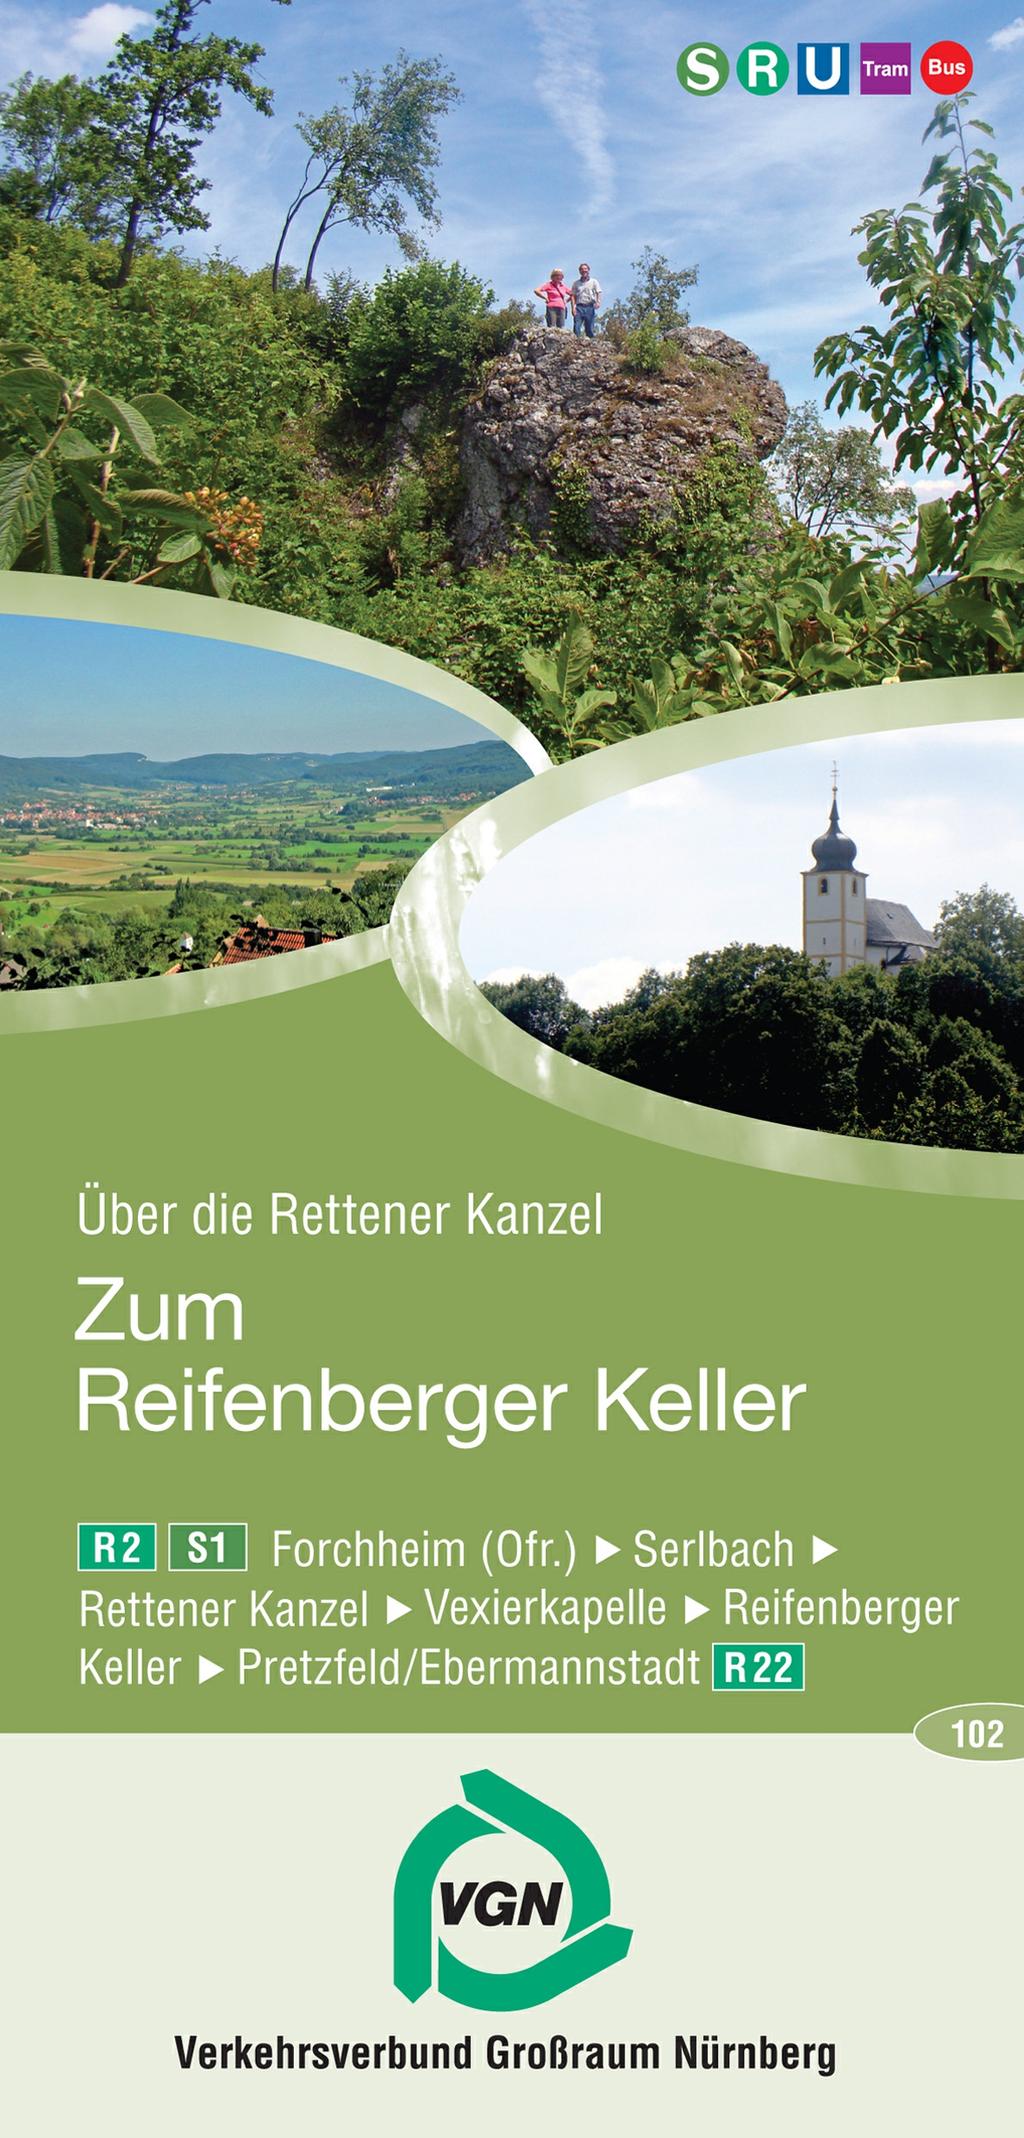 Über die Rettener Kanzel zum Reifenberger Keller Entfernung: ca. 16,1 km, Dauer: 4-4,5 Std.